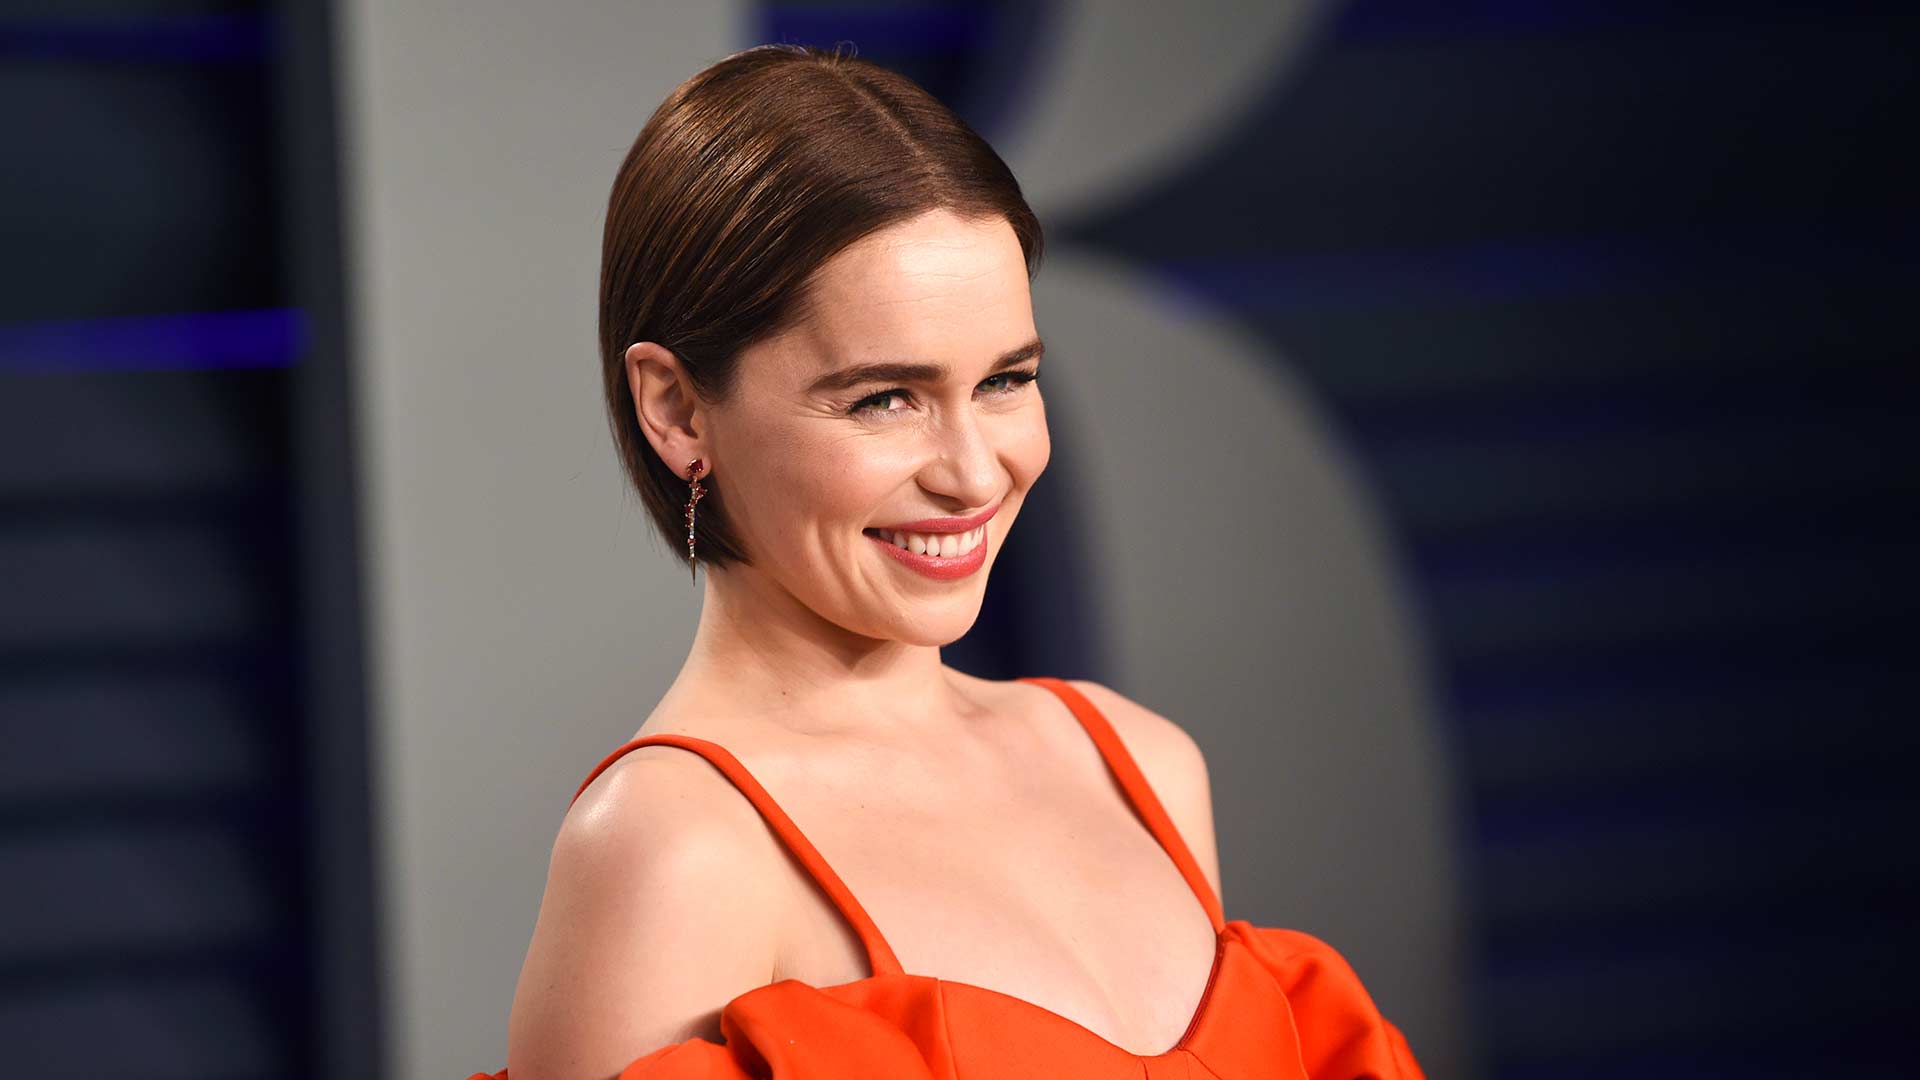 La actriz de ‘Juego de Tronos’ Emilia Clarke revela que sufrió dos aneurismas durante el rodaje